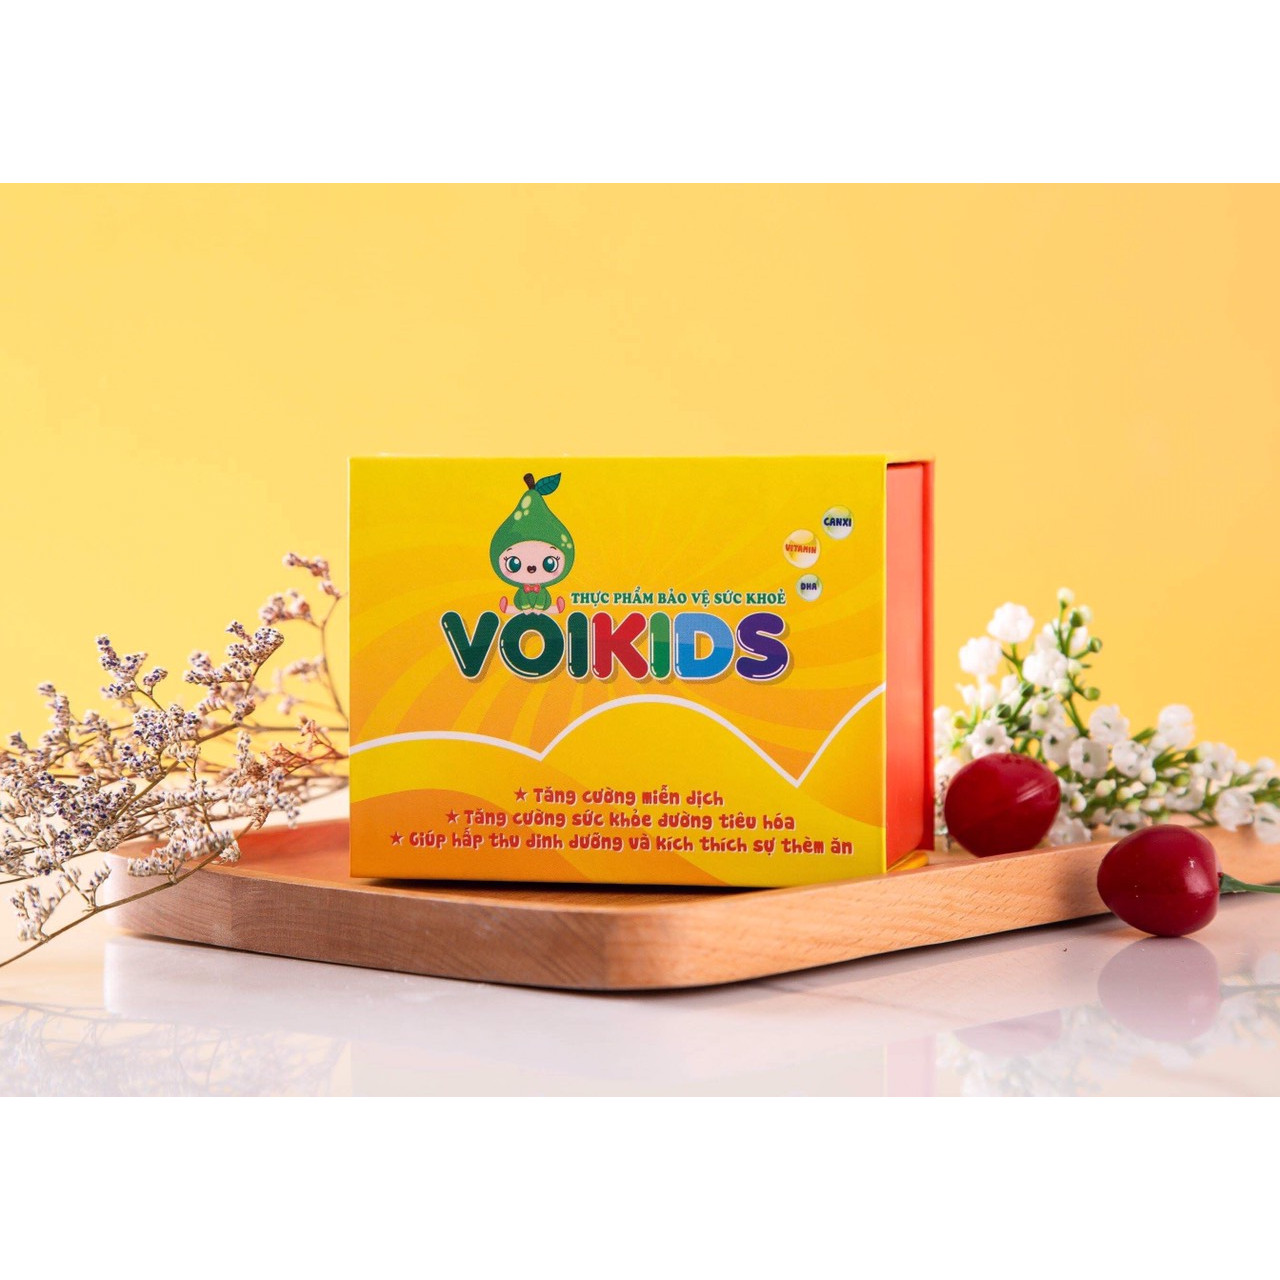 Thực phẩm bảo vệ sức khỏe Voikids